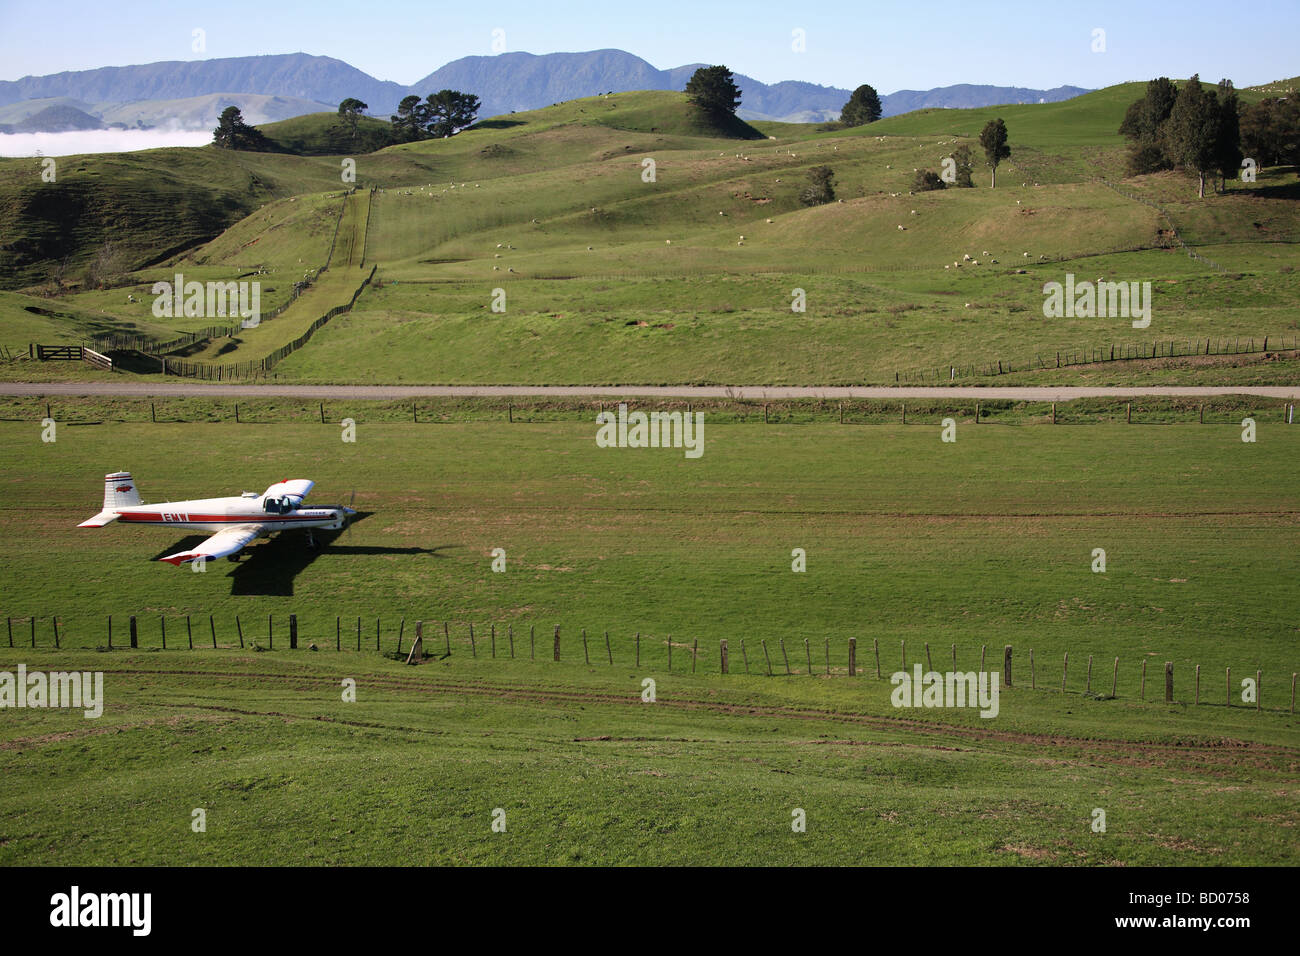 Agricoltura aeroplano di atterraggio sulla fattoria rurale pista di atterraggio per aerei, Isola del nord, Nuova Zelanda Foto Stock